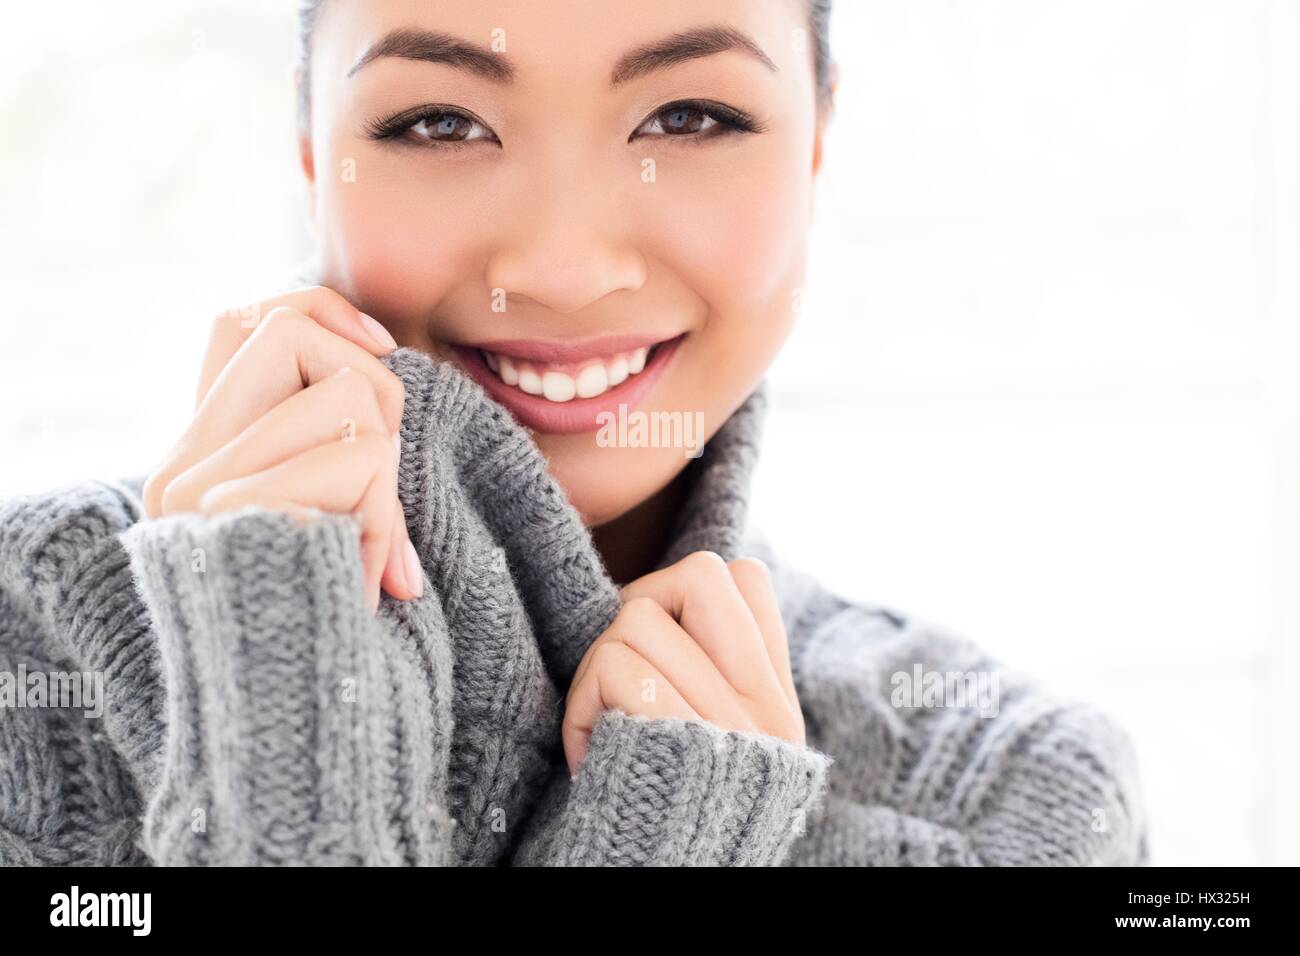 -MODELL VERÖFFENTLICHT. Junge asiatische Frau tragen graue Strickpullover, Portrait. Stockfoto